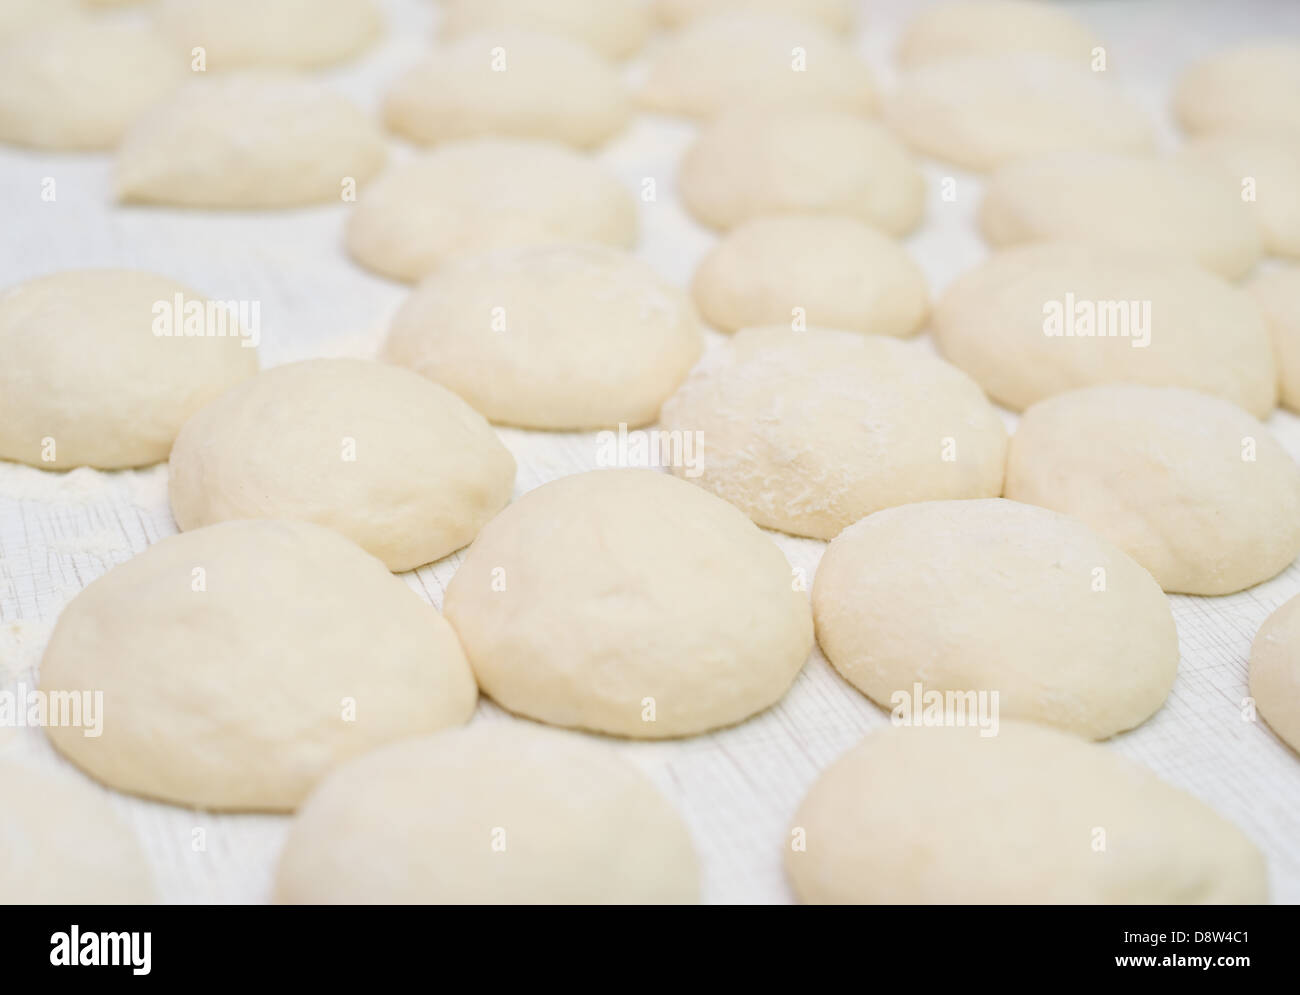 making buns Stock Photo